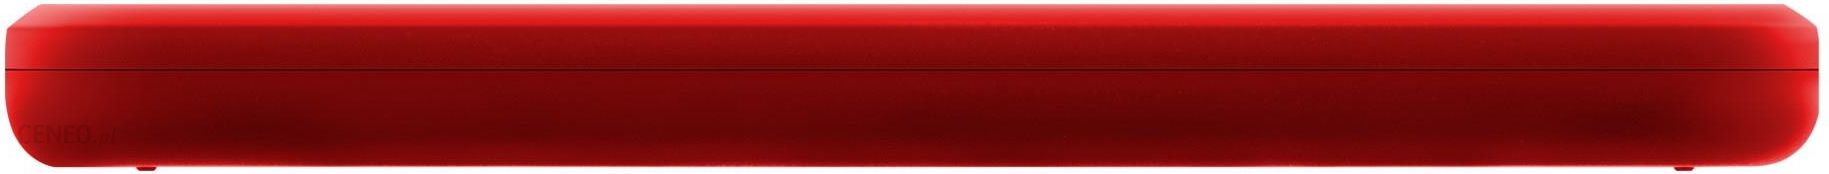 Dysk zewnętrzny Adata HV300 Classic 1TB 2,5 USB3.1 Czerwony (AHV300-1TU31- CRD) - Opinie i ceny na Ceneo.pl